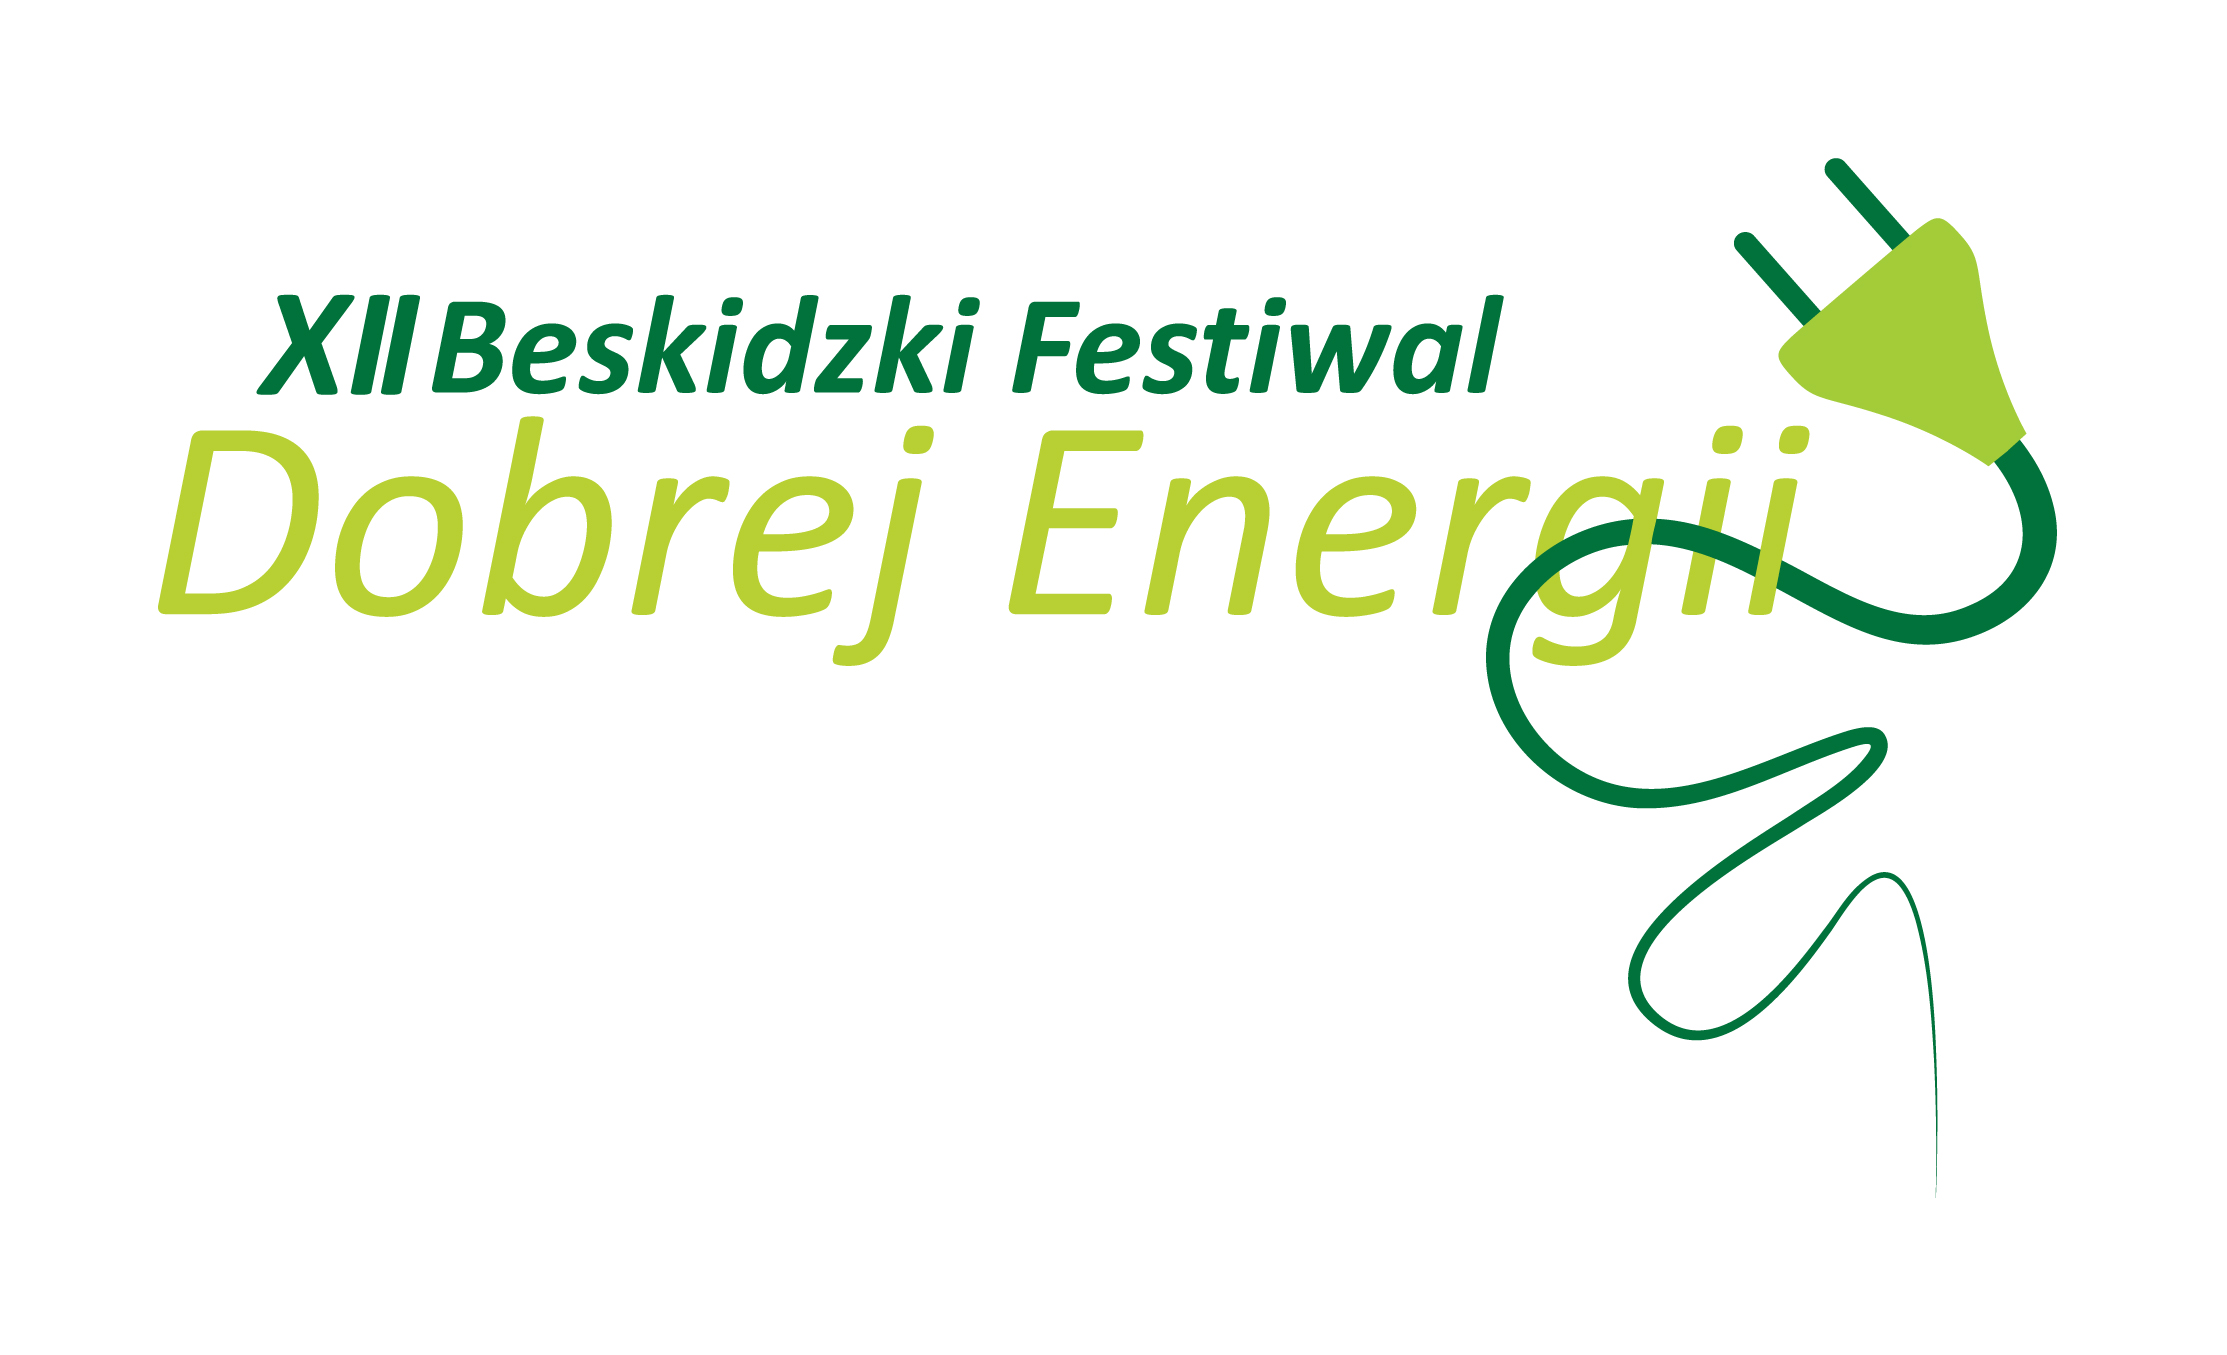  12. Beskidzki Festiwal Dobrej Energii na zdjęciu Beskidzki Festiwal Dobrej Energii